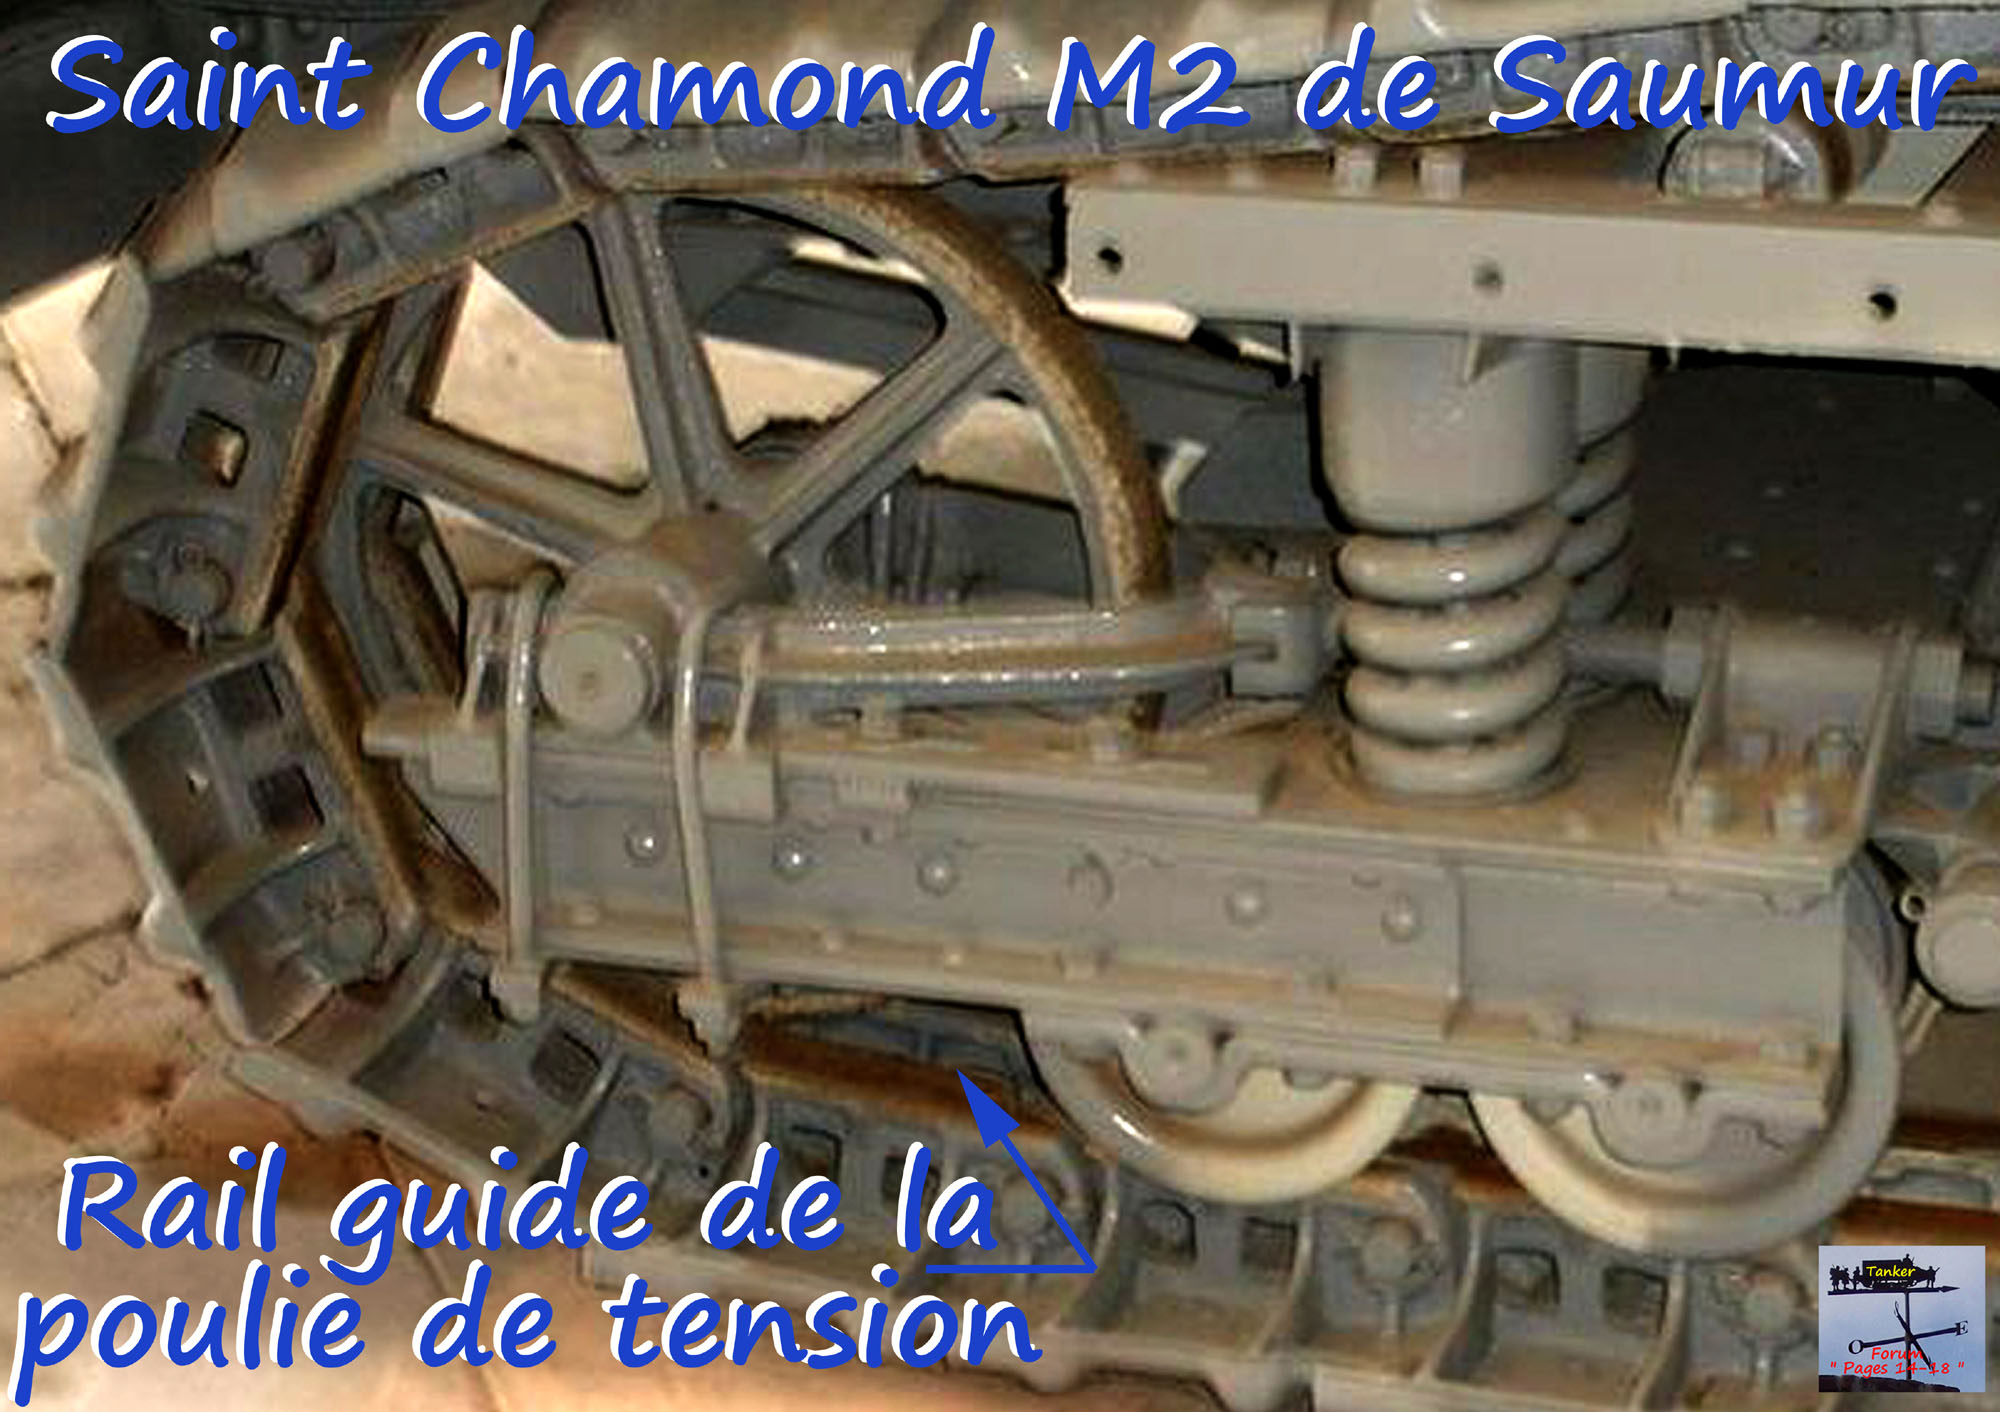 20 - Poulie de tension de Saint Chamond .jpg